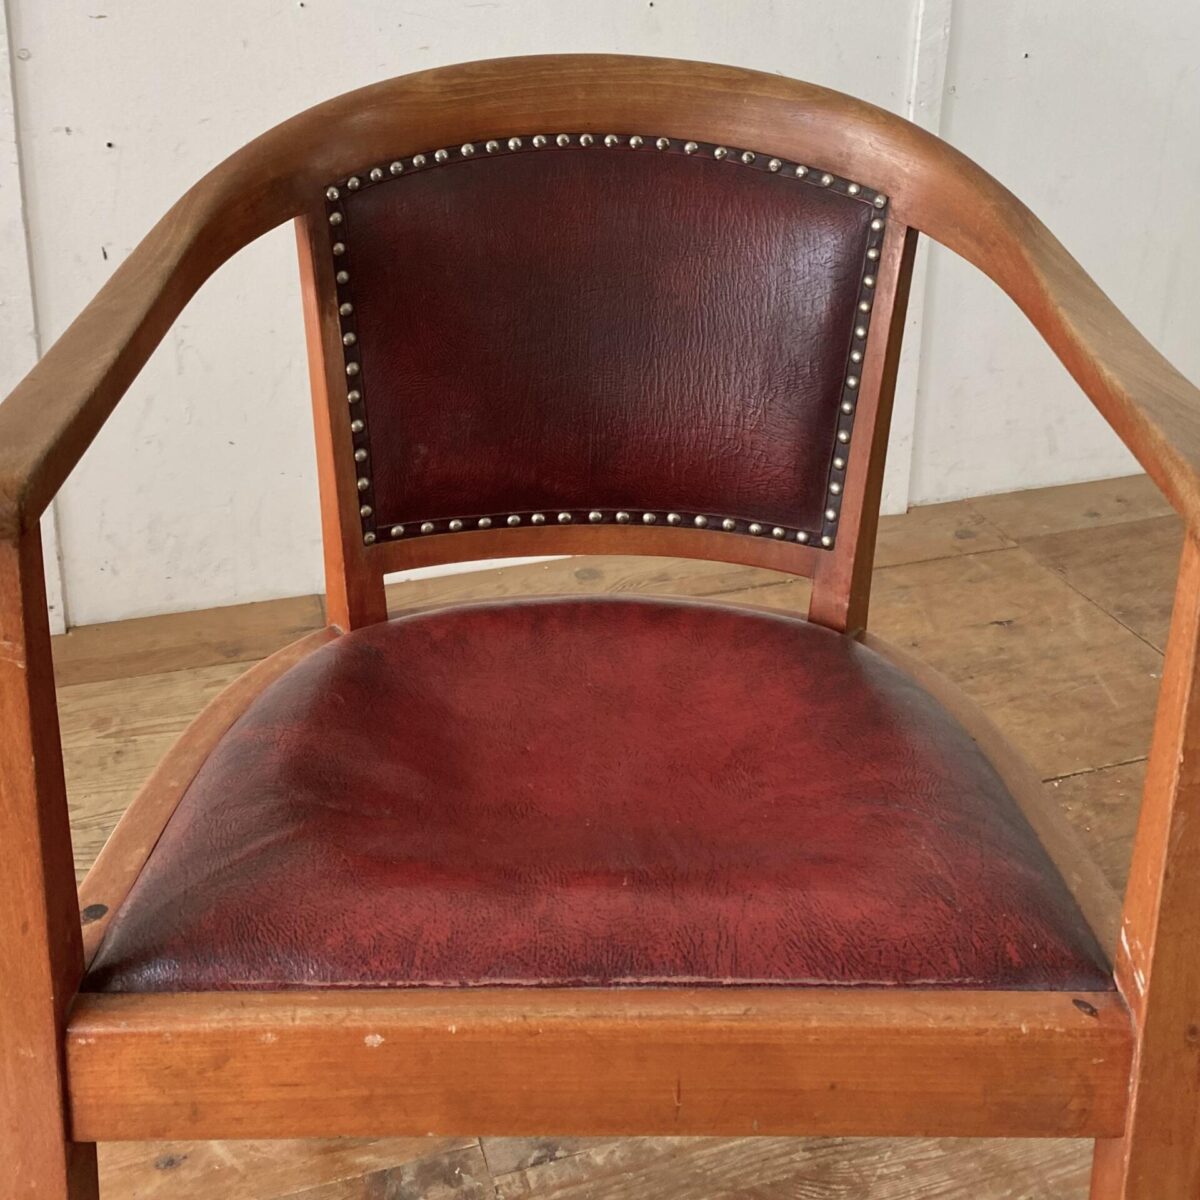 Deuxieme.shop Armlehnstuhl mit rotem Leder. 55x55cm Höhe 83cm Sitzhöhe 45cm. Der Stuhl ist in stabilem Vintage Zustand mit Alterspatina, das Sitzpolster ist durchgesessen. 